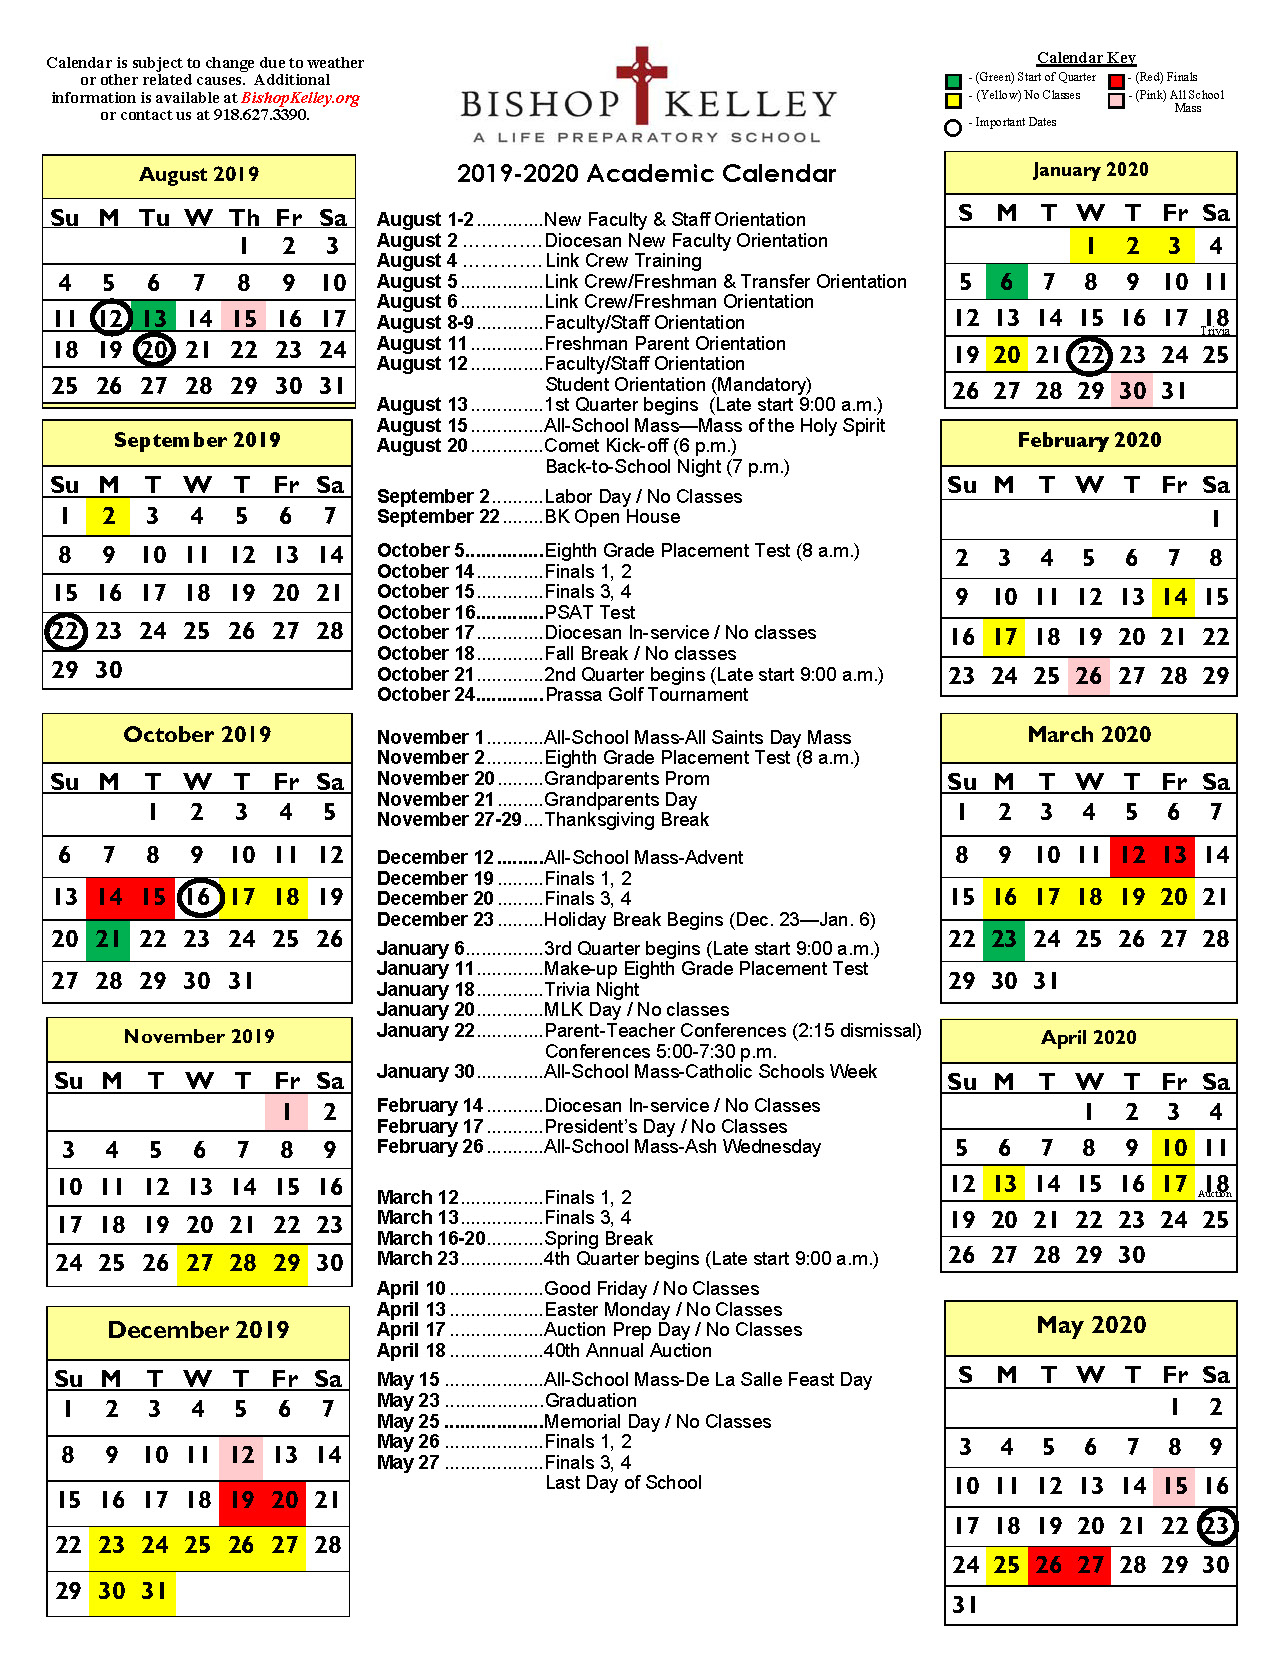 Free Printable Catholic Calendar Catholic Calendar 2020 Uk Free